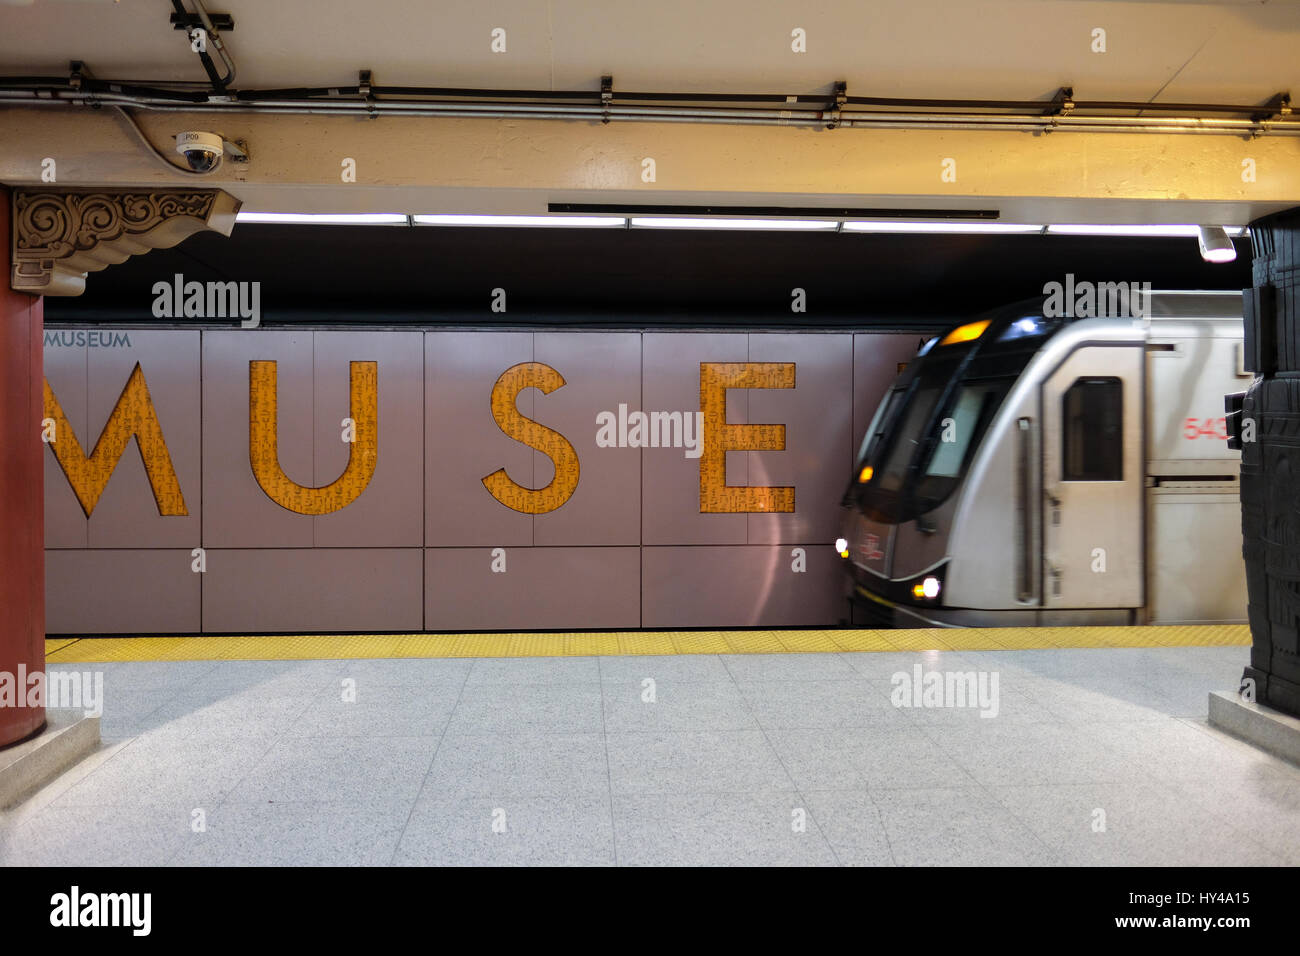 Tren que llega a la estación de metro del Museo de la plataforma/estación de metro, estación de metro, metro TTC en el centro de Toronto, Ontario, Canadá. Foto de stock